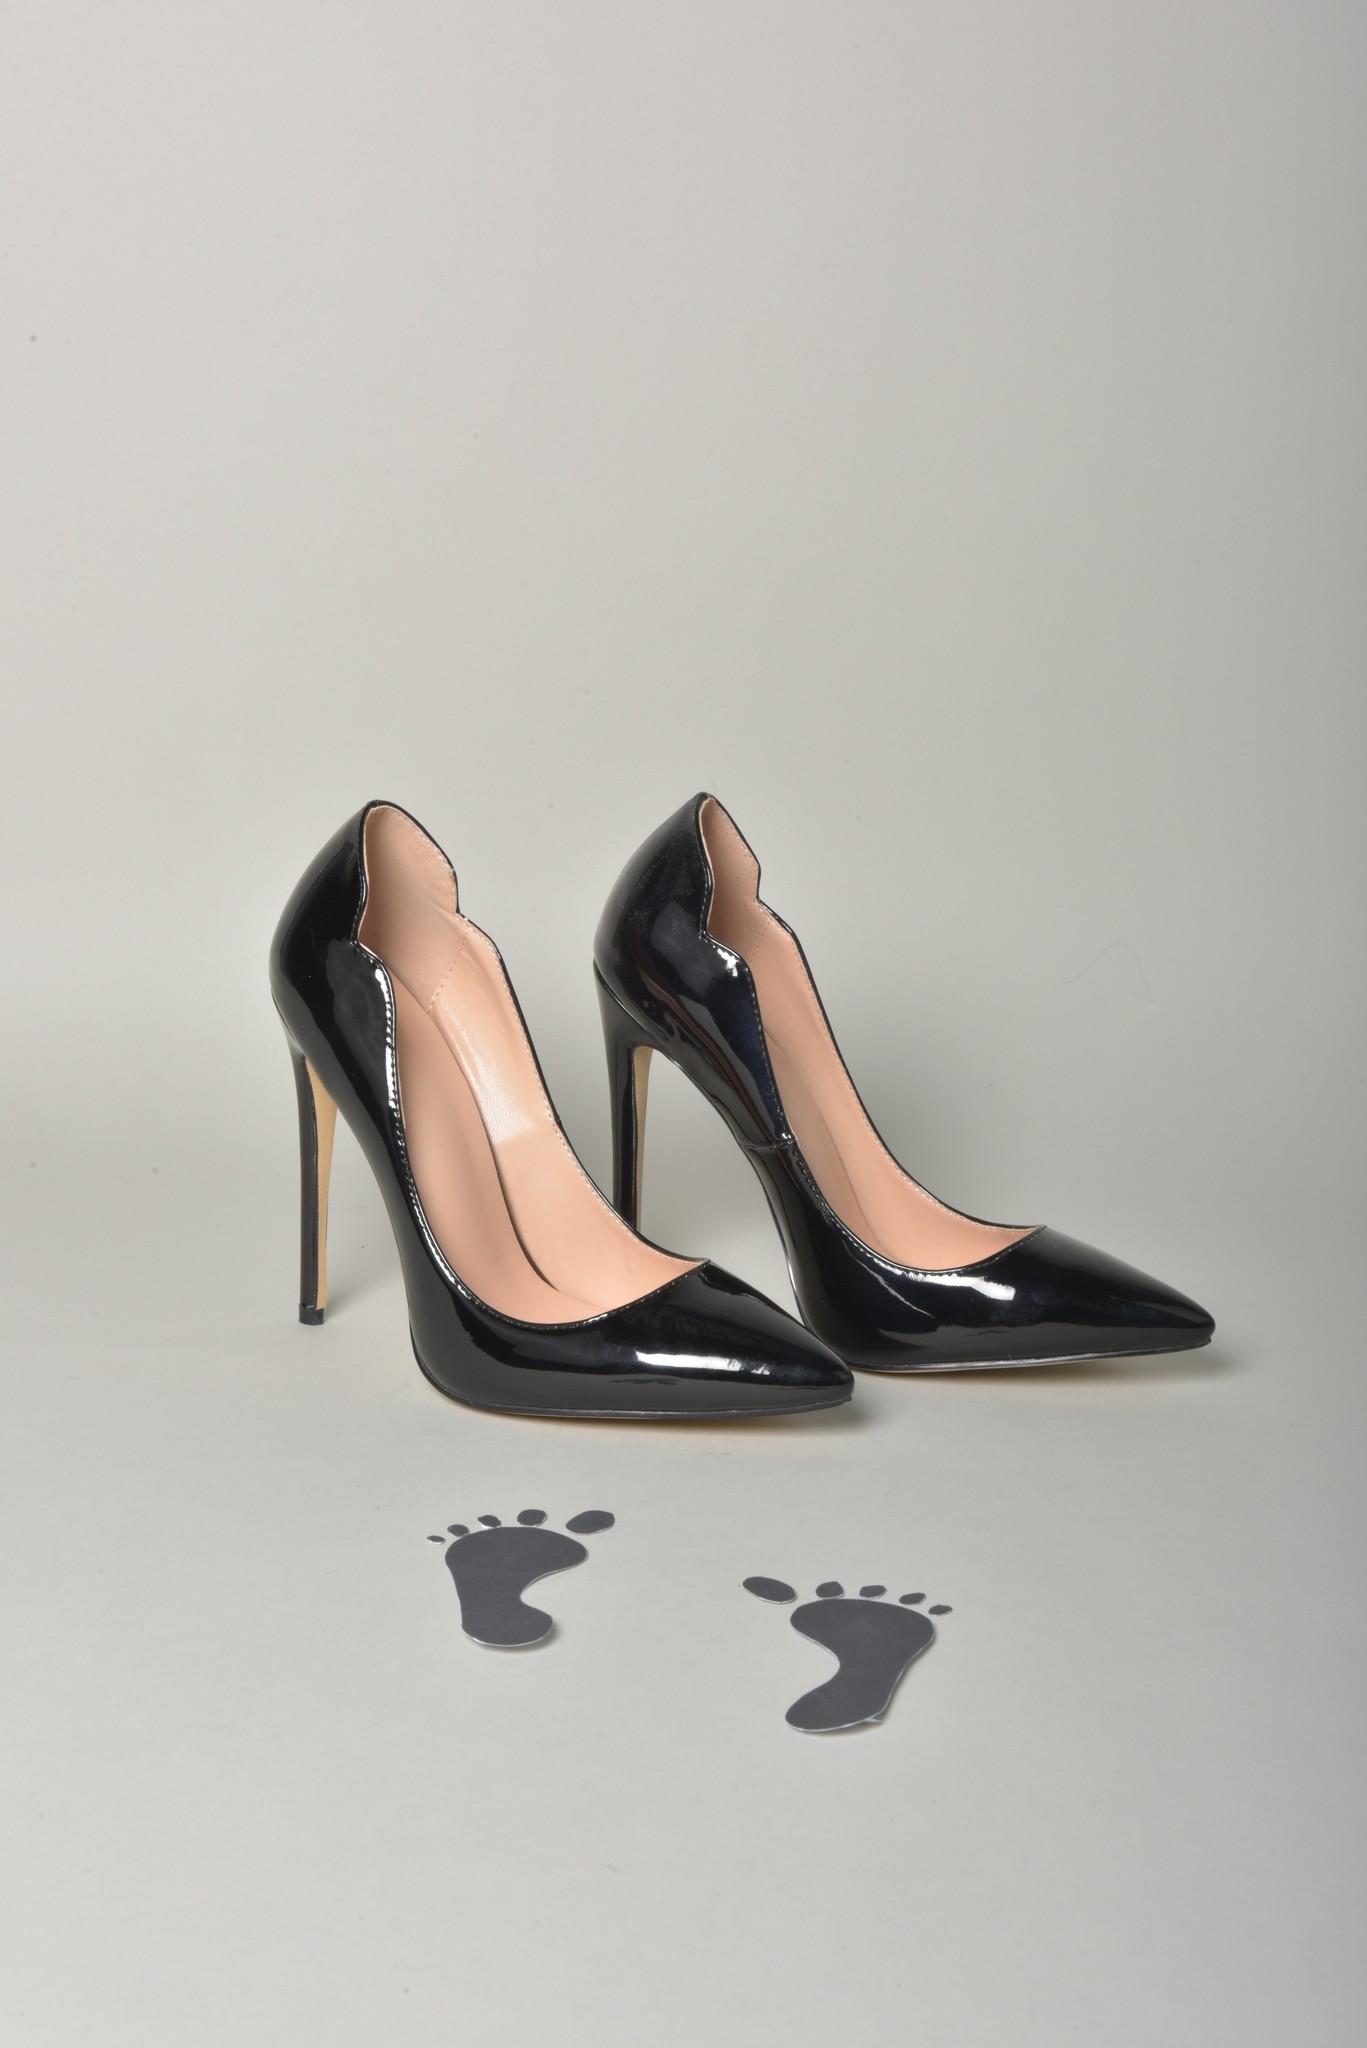 Hot chick black shiny pump - Shoebidoo Shoes | Giaro high heels